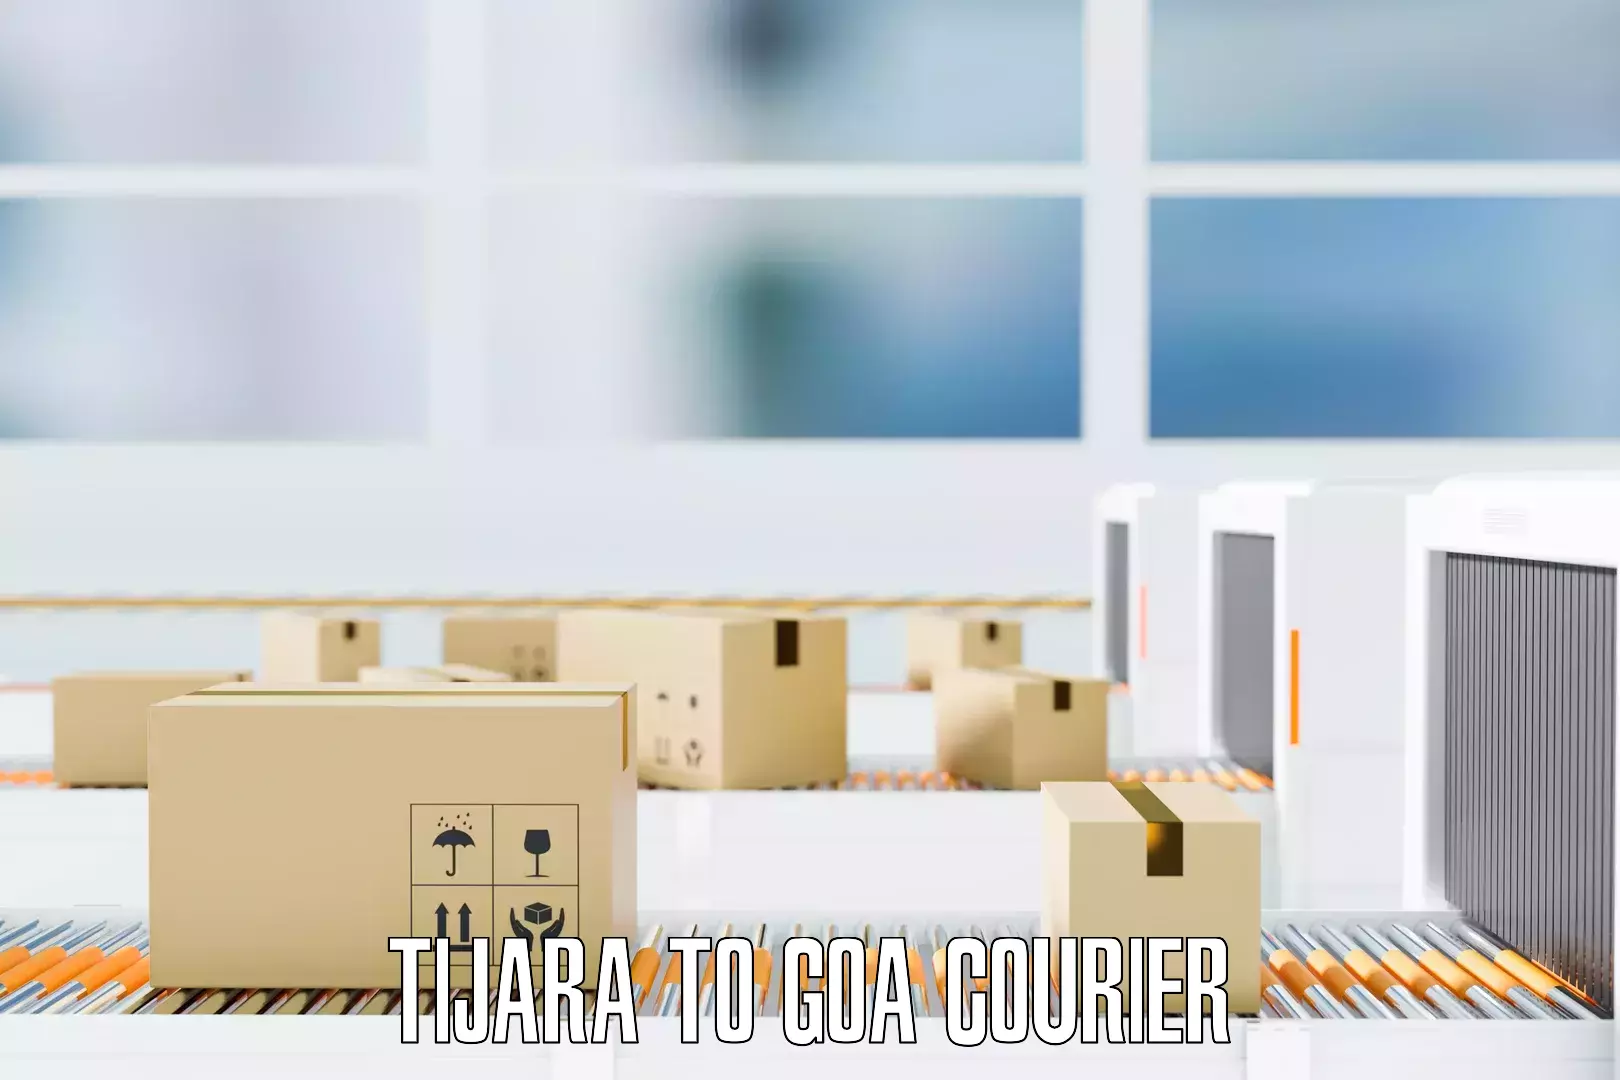 Affordable household movers Tijara to Goa